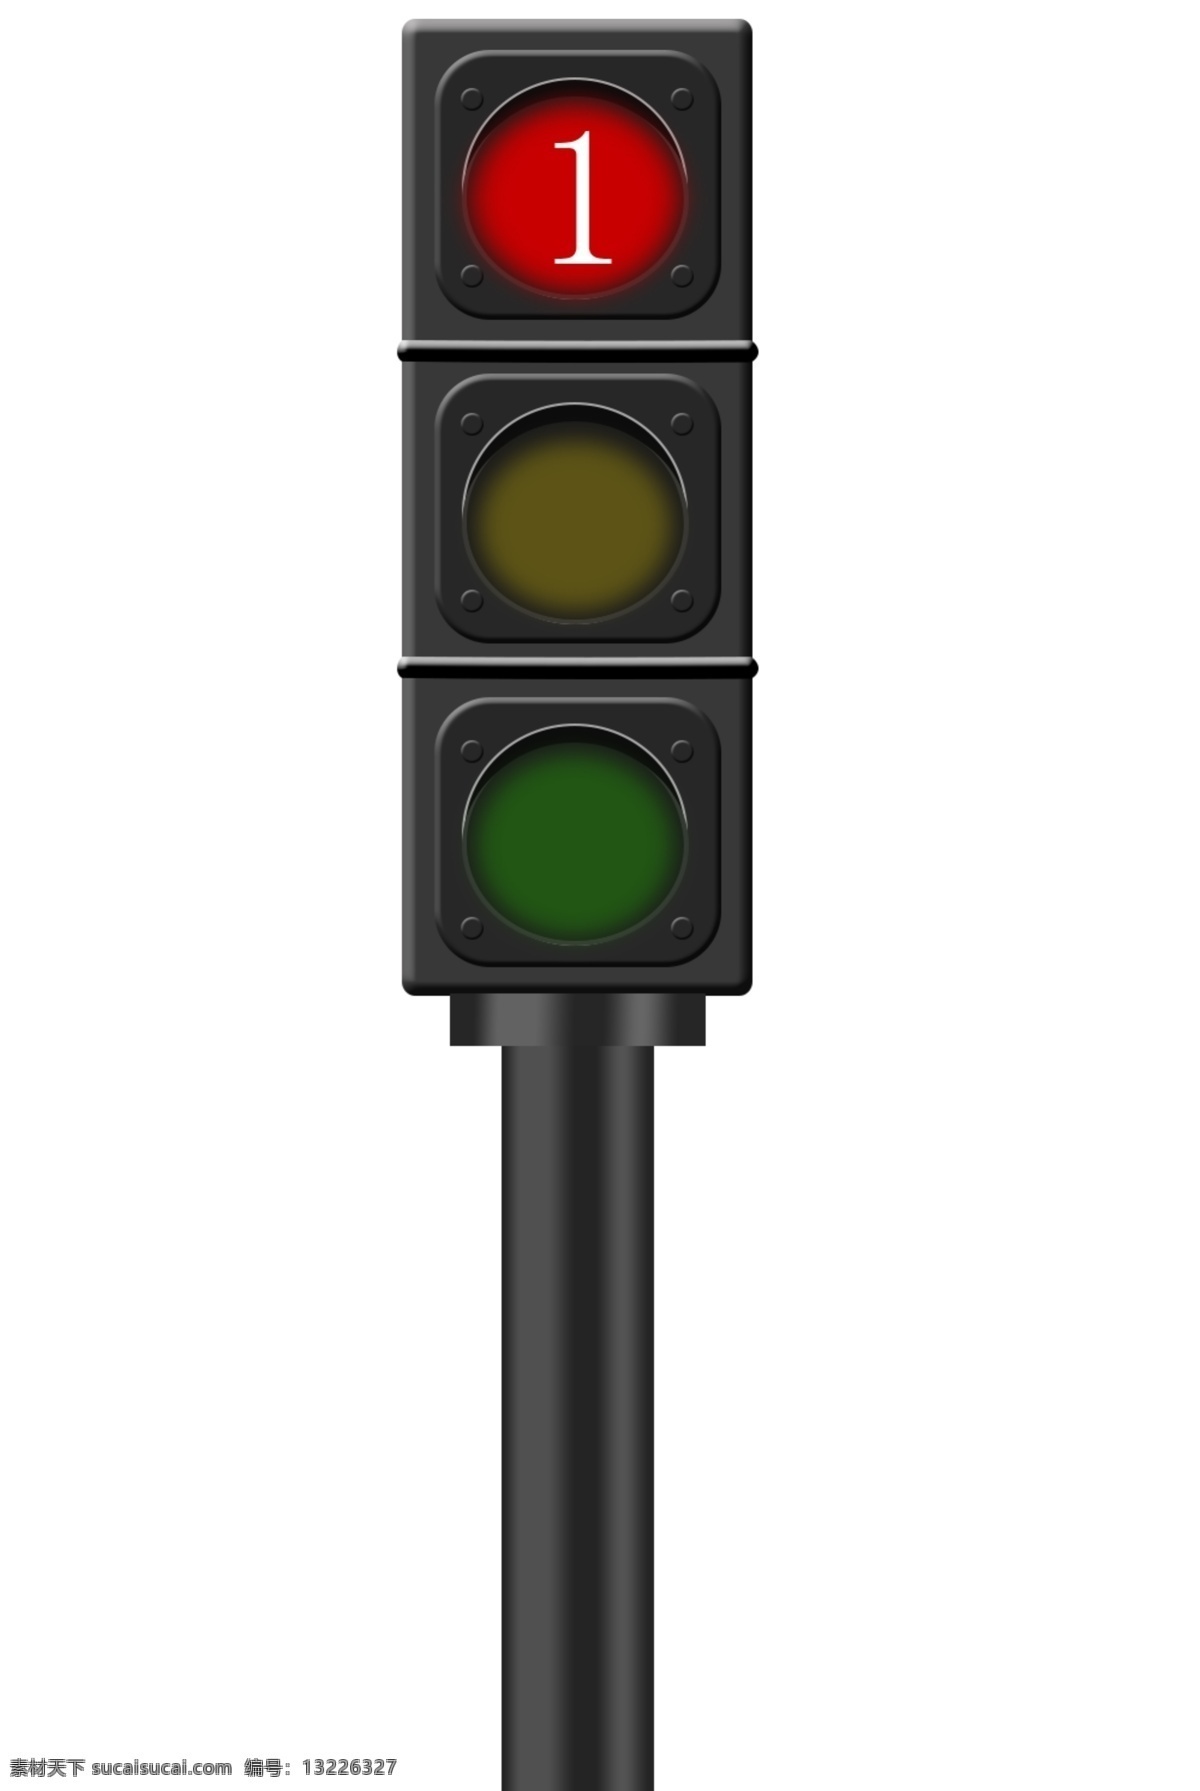 gif 动 图 信号灯 动图 gif信号灯 交通灯 红绿灯 标志图标 公共标识标志